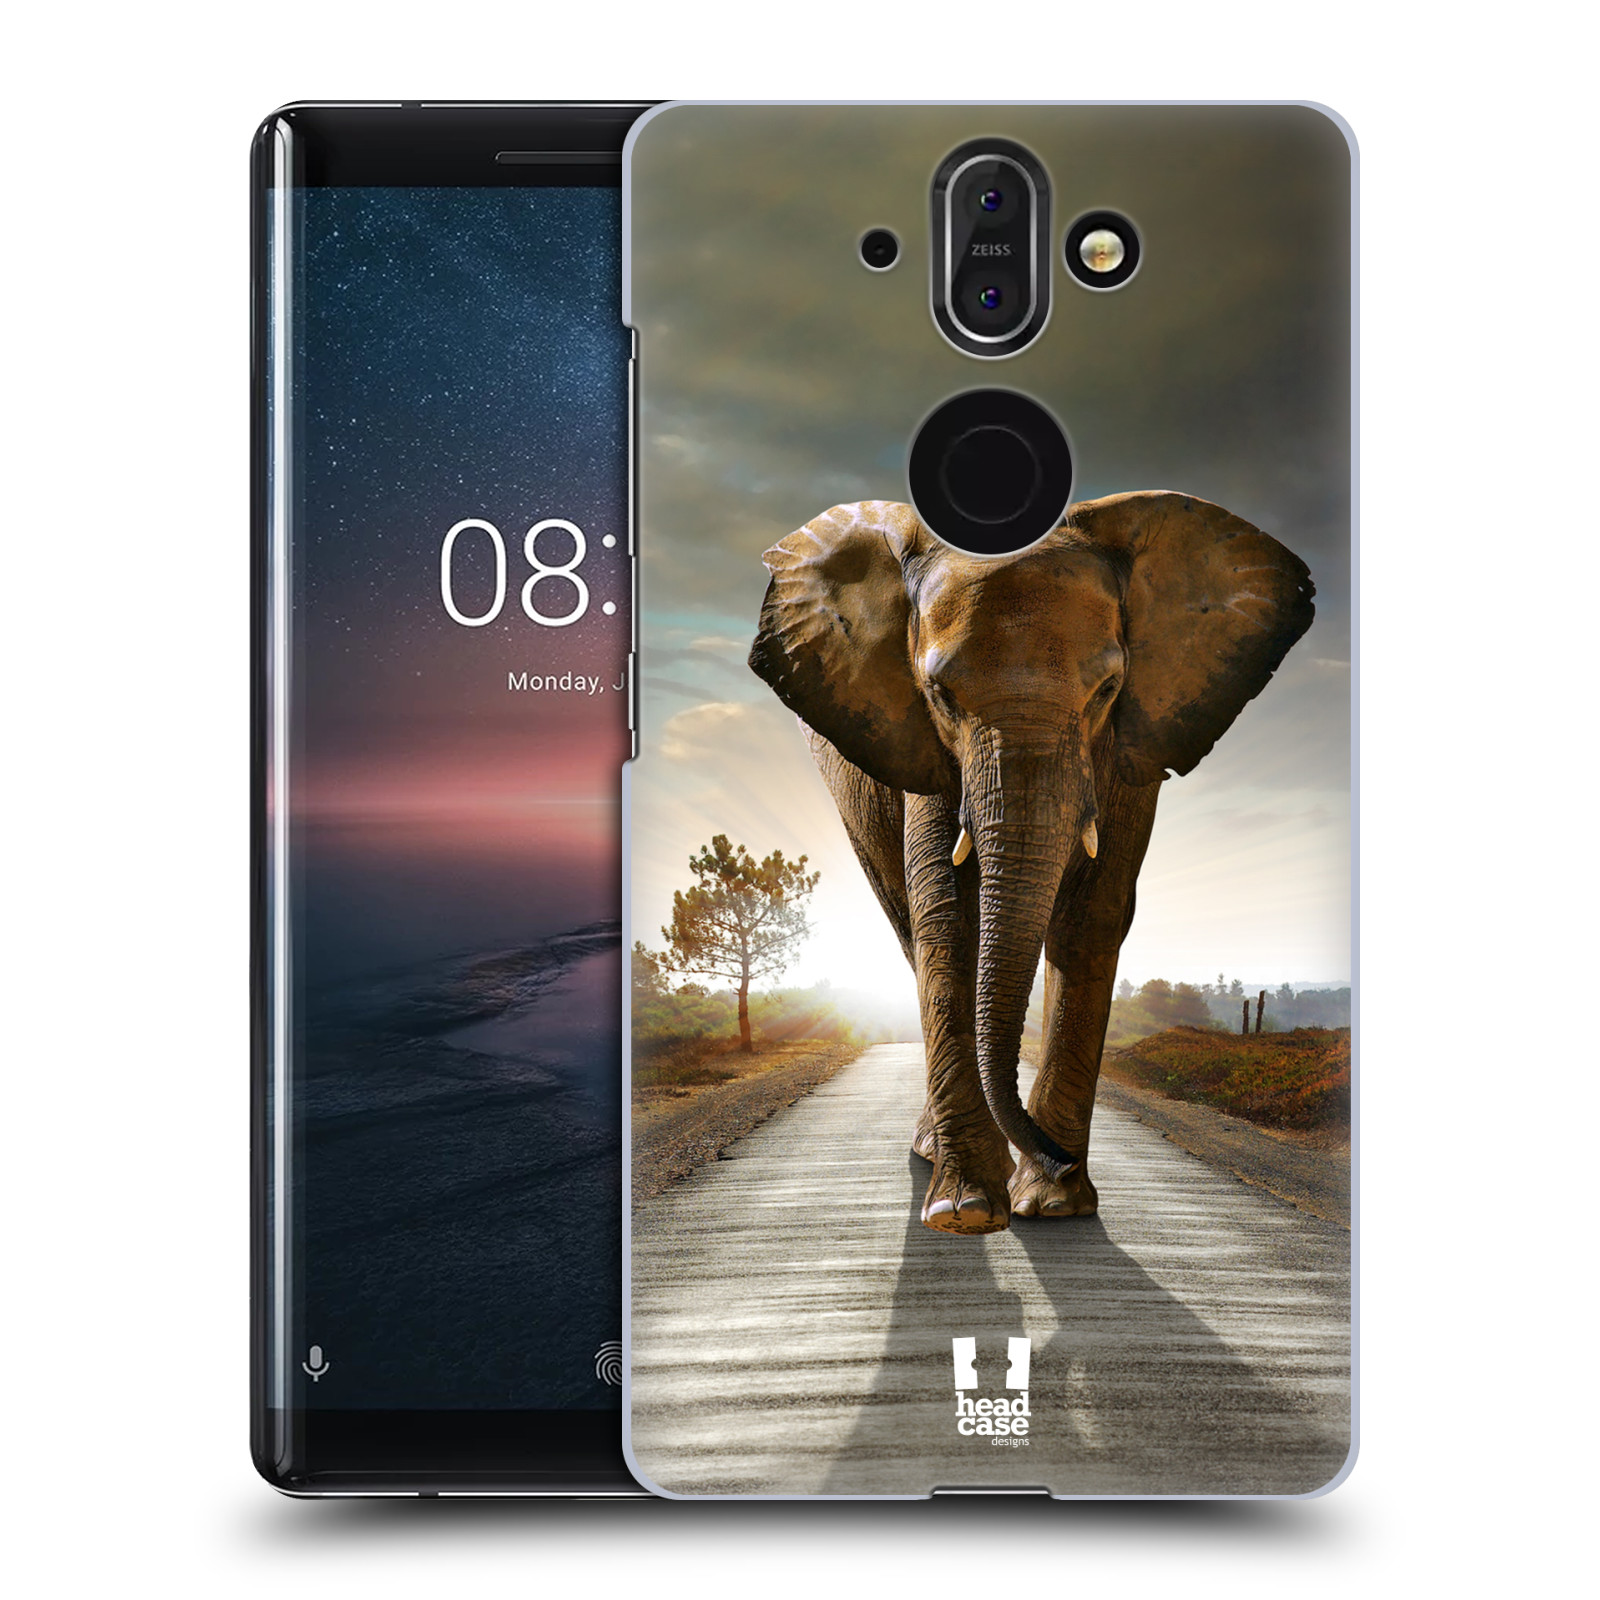 Zadní obal pro mobil Nokia 8 Sirocco - HEAD CASE - Svět zvířat kráčející slon